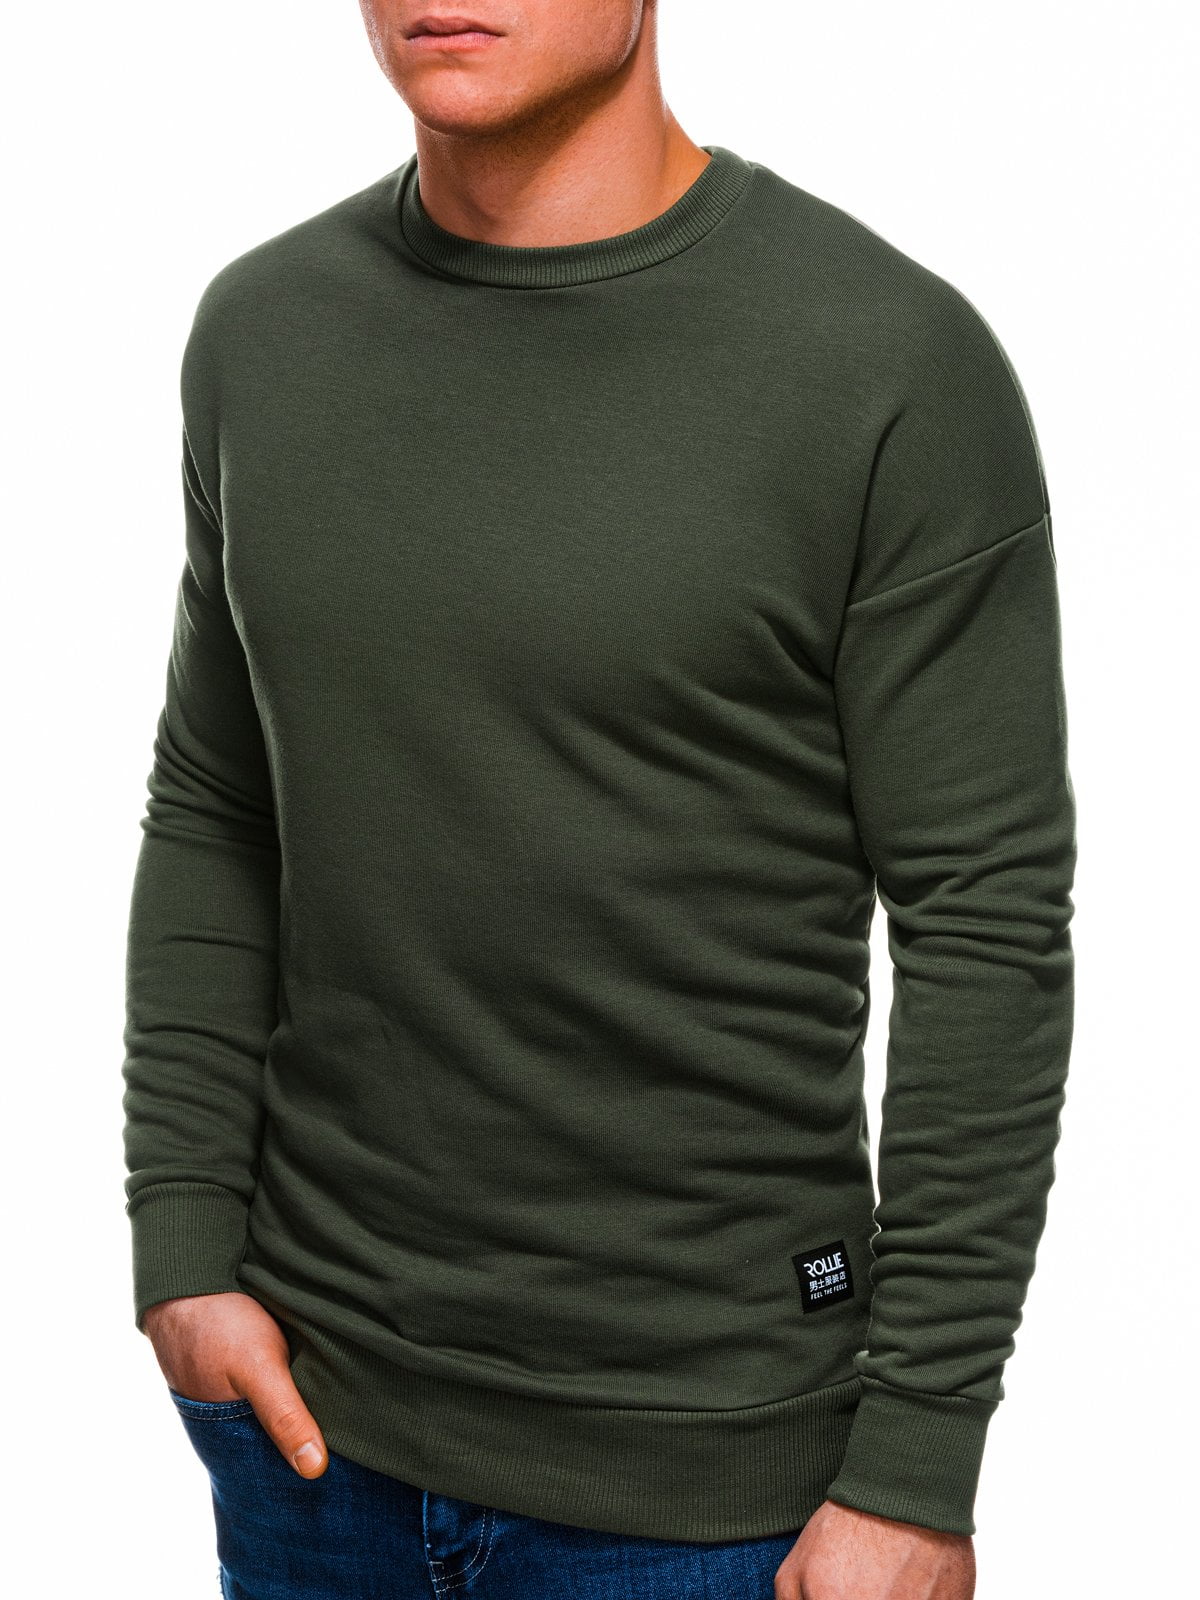 Afbeelding van Ombre heren sweater groen klassiek b1229